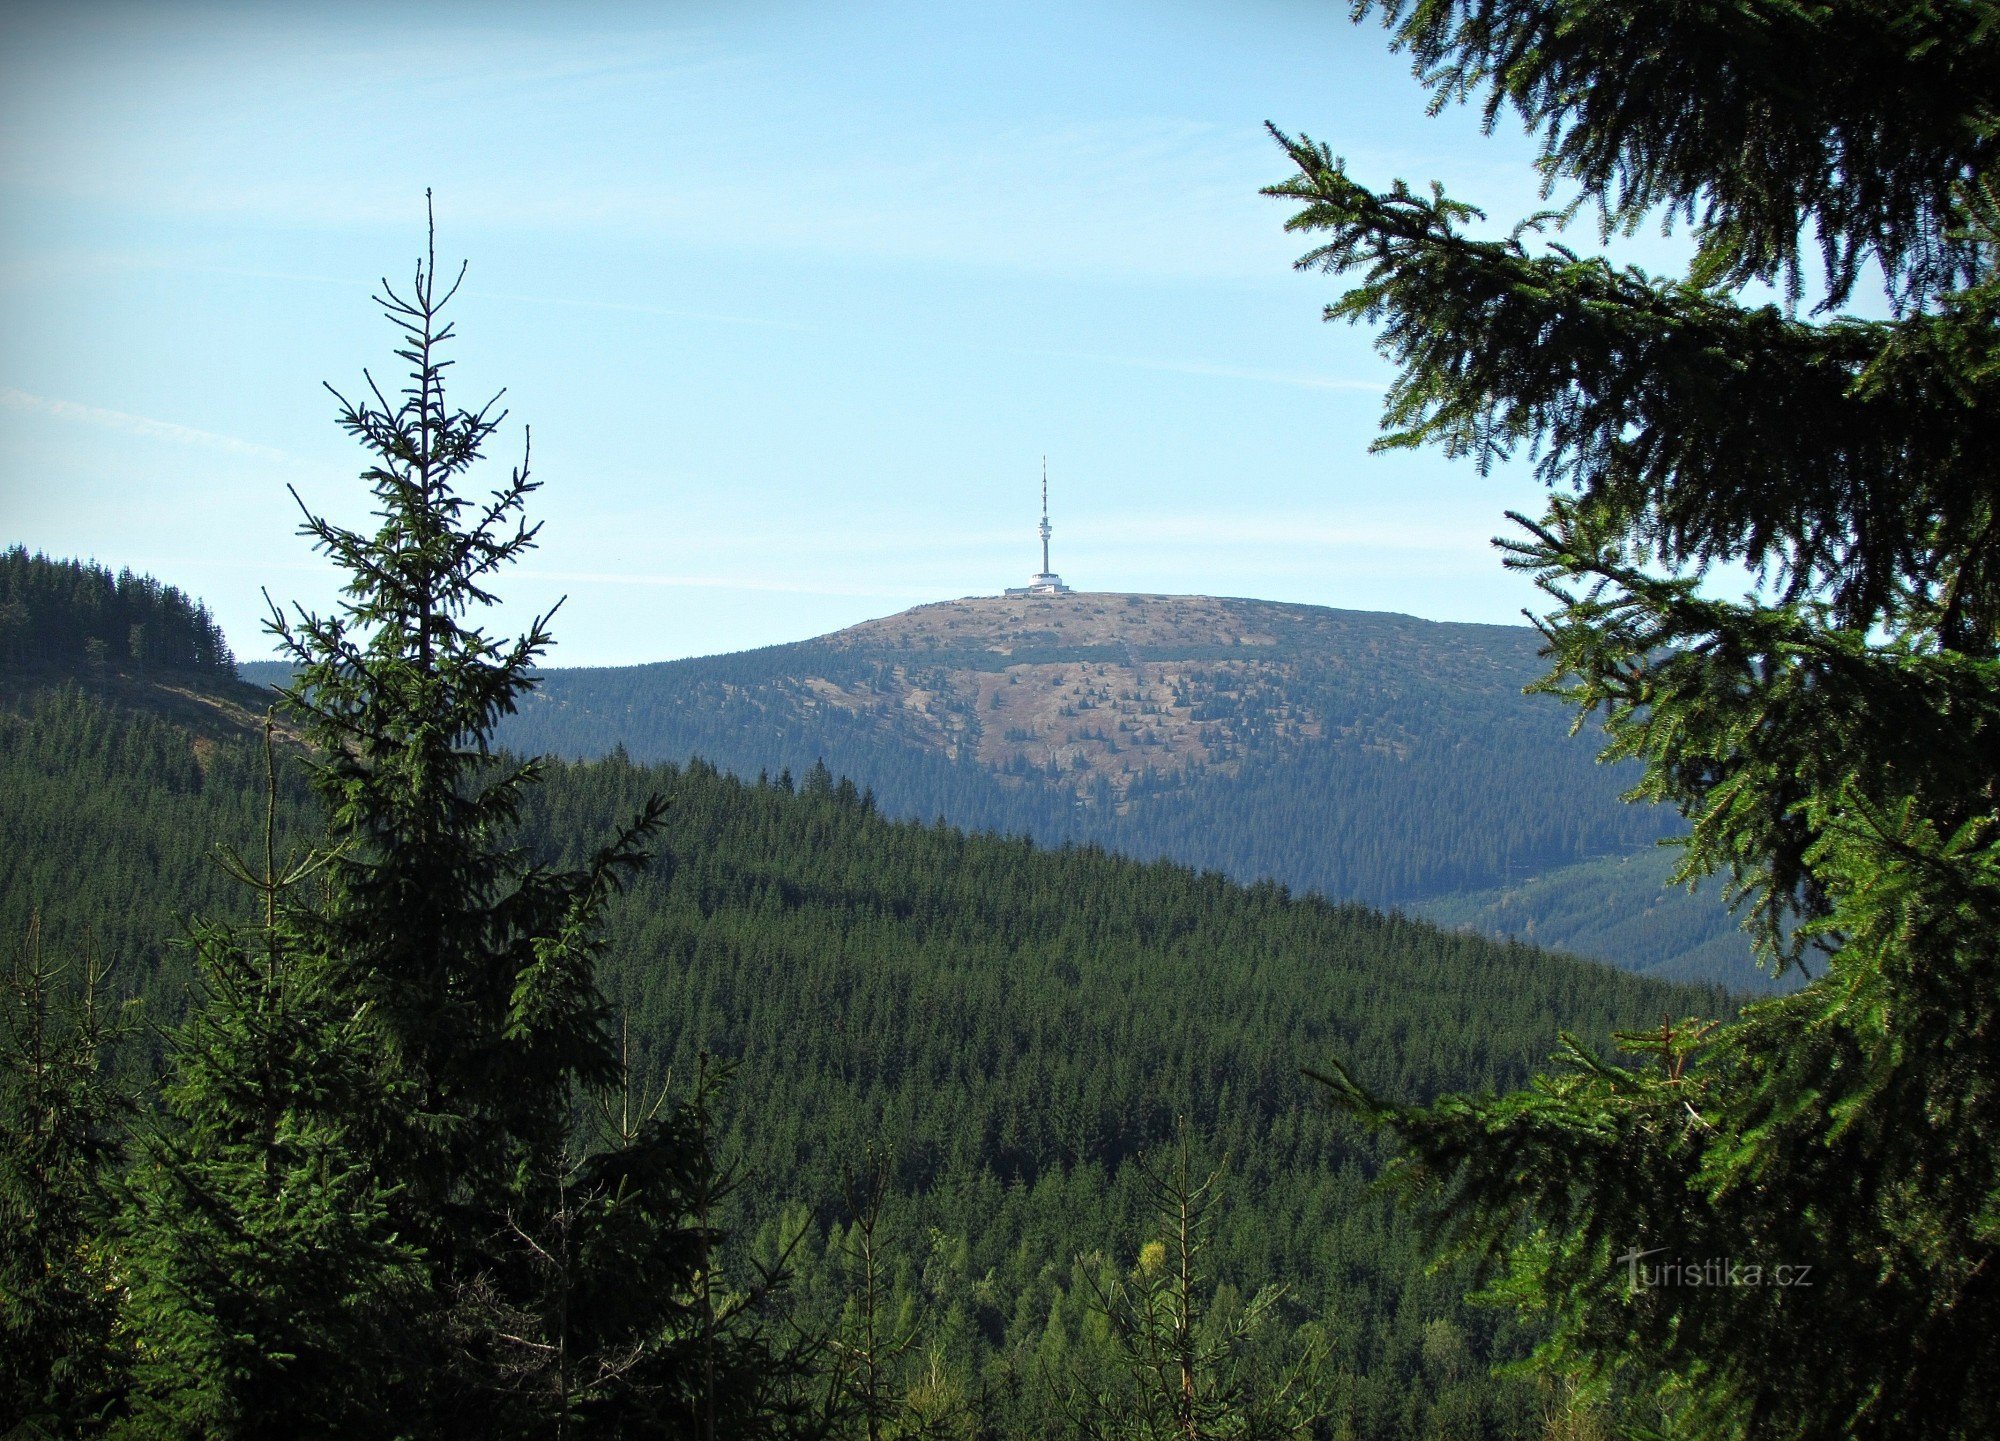 Járový vrch lookout point